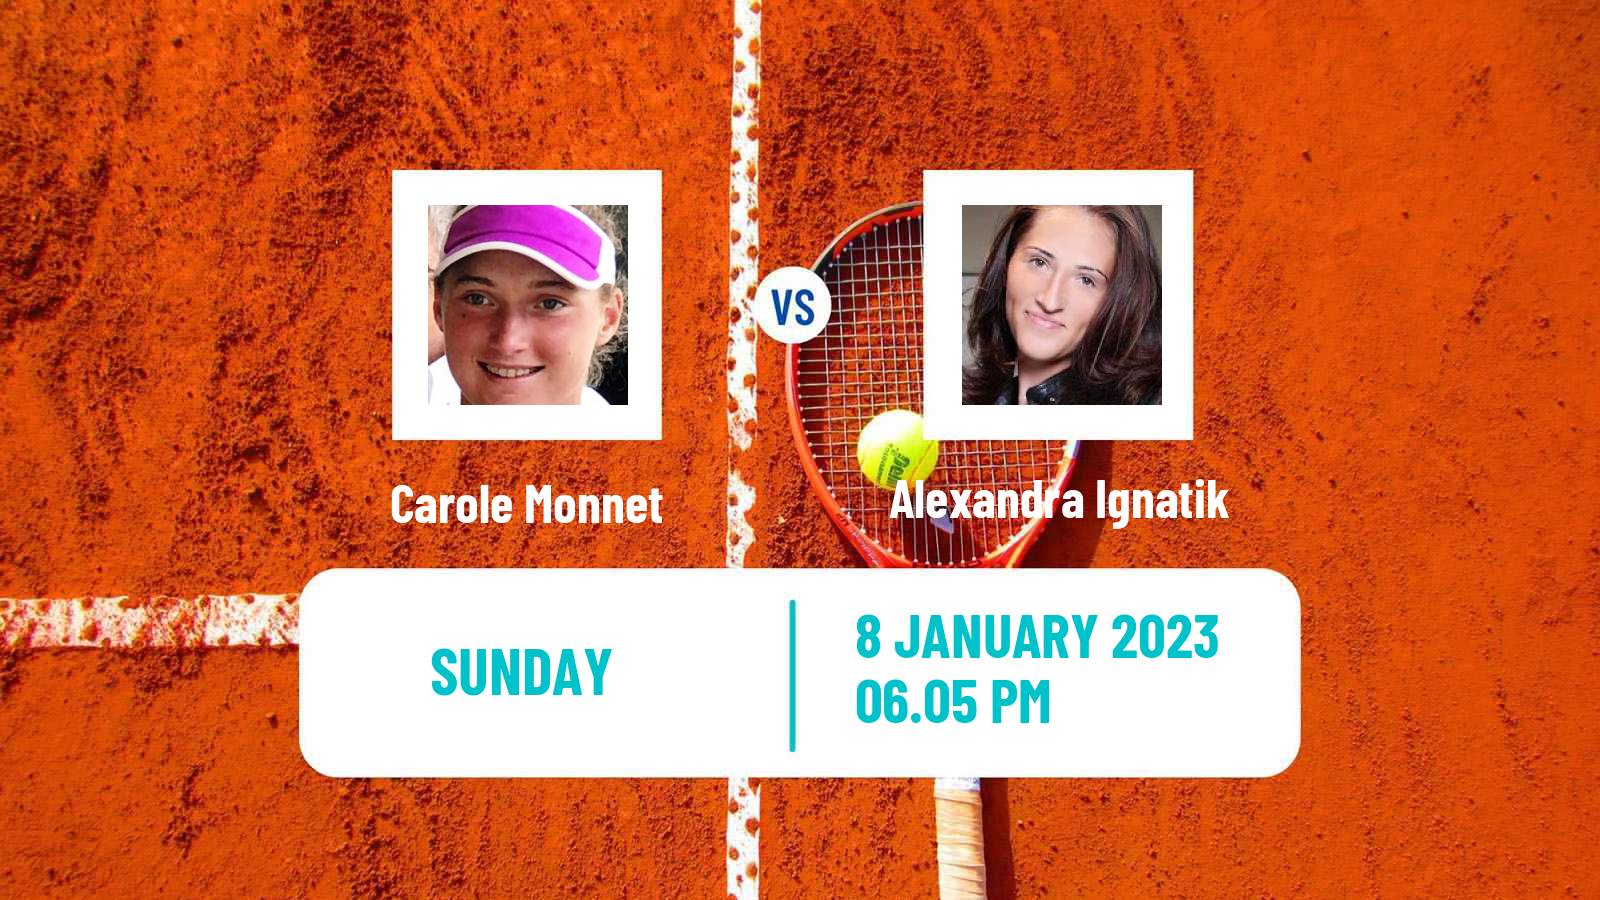 Tennis WTA Australian Open Carole Monnet - Alexandra Ignatik